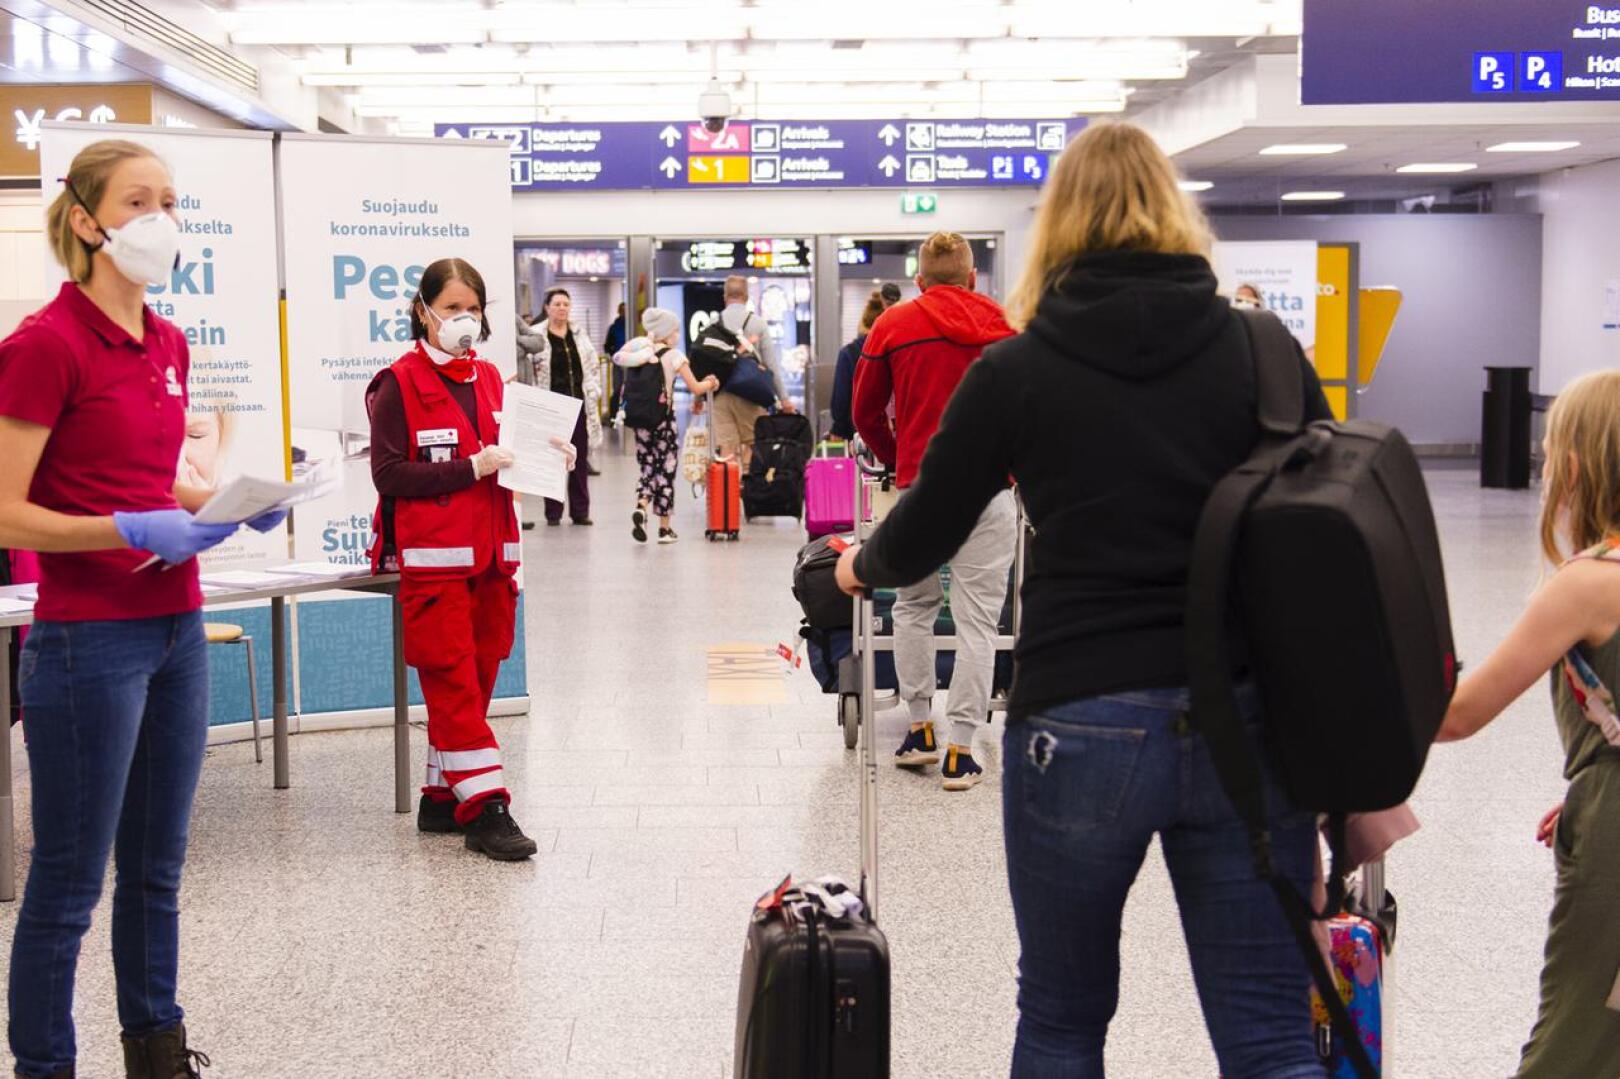 SPR:n vapaaehtoiset aloittivat Helsinki-Vantaan lentoasemalla tiedon jakamisen koronaviruksesta viime viikon alussa. Sitä ennen yli 200 000 lentomatkustajaa sai viime viikkoon asti kulkea lentokentän kautta Suomeen käytännössä ilman minkäänlaisia toimia.